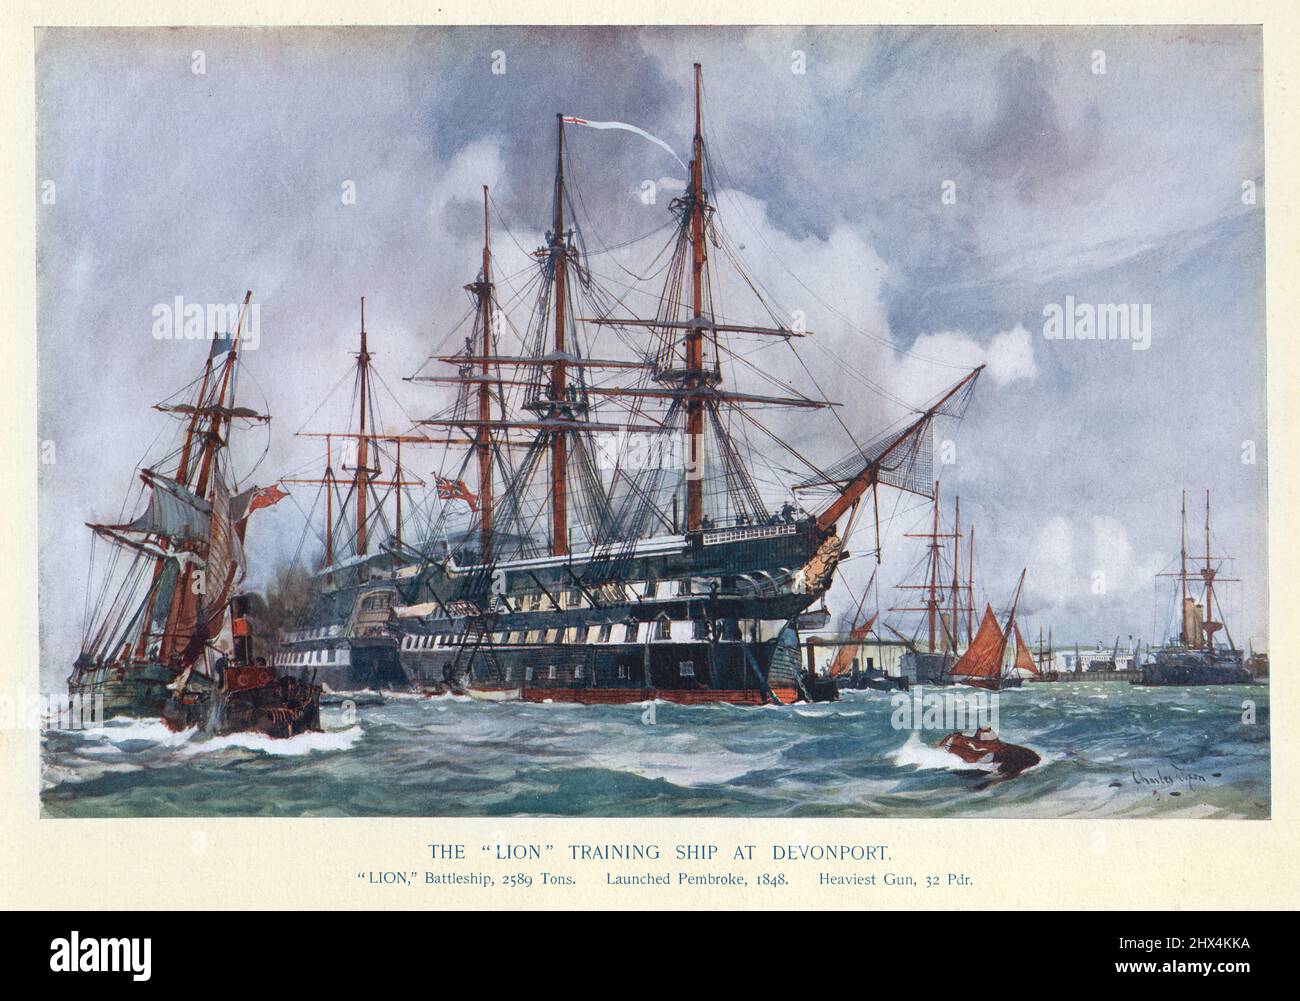 HMS Lion, nave da addestramento della Marina reale a Devonport, 19th secolo. HMS Lion era una nave di classe Vanguard di 80 cannoni costruita per la Royal Navy nel 1840s. Fu dotata di propulsione a vapore nel 1858-1859. Nel 1871 Lion è stato convertito in una nave da addestramento presso il cantiere navale HM Dockyard, Devonport. Foto Stock